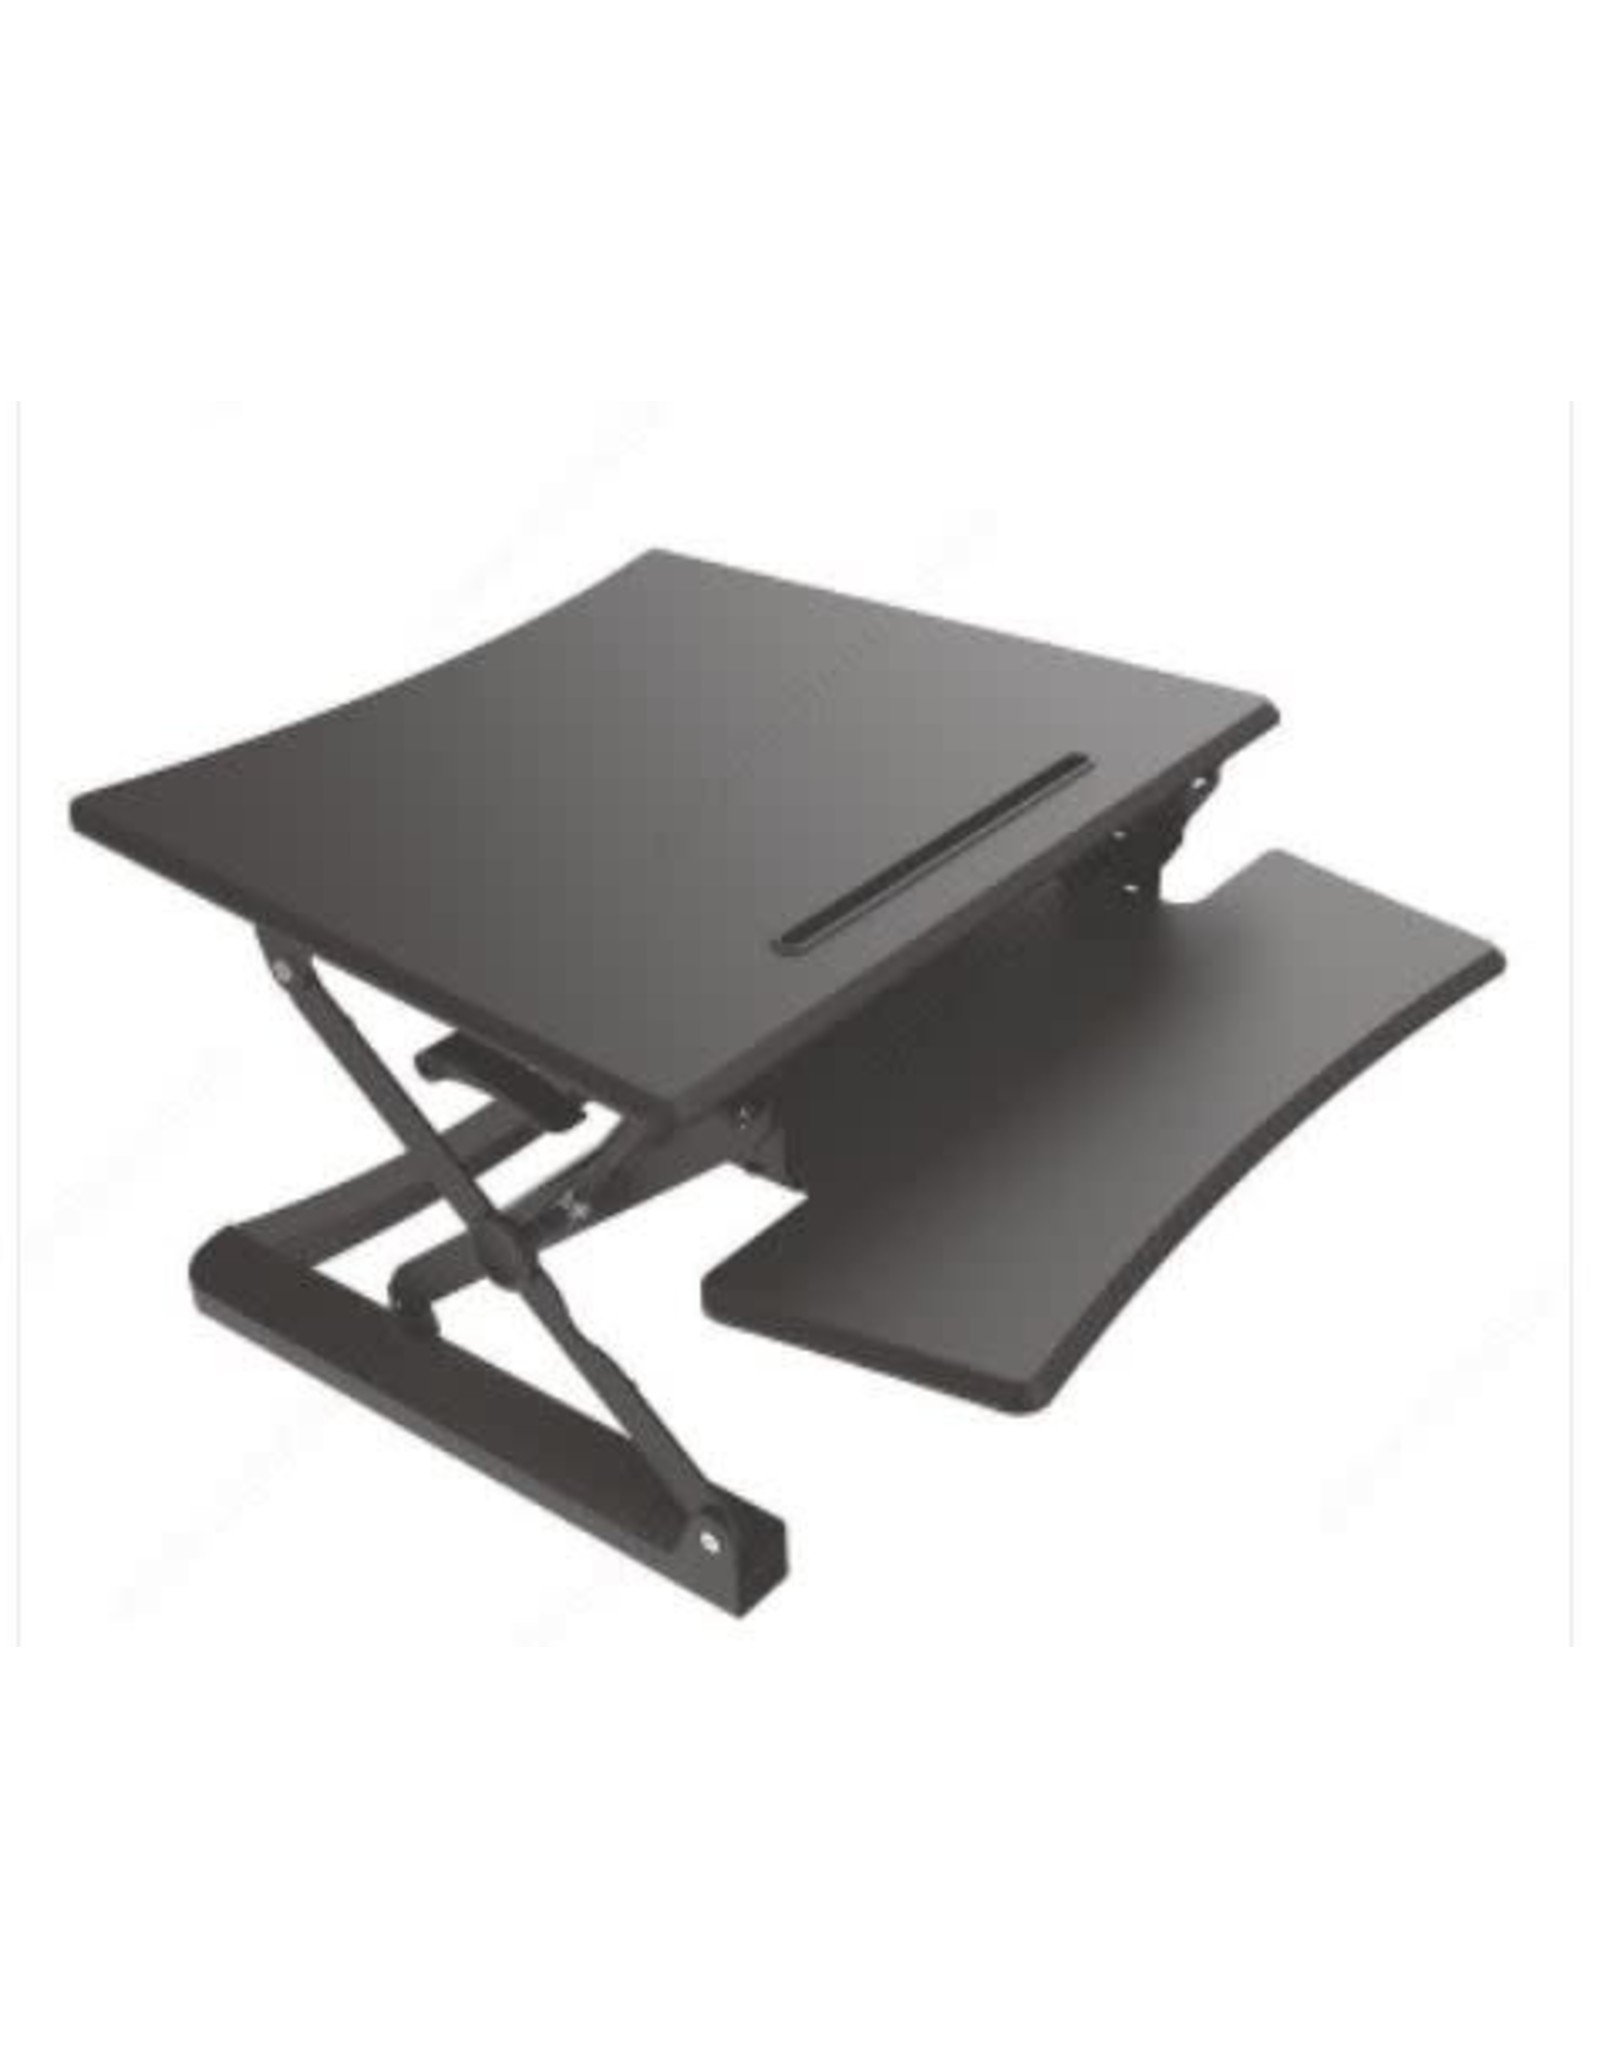 Topper 3 Series Desk Riser - Black